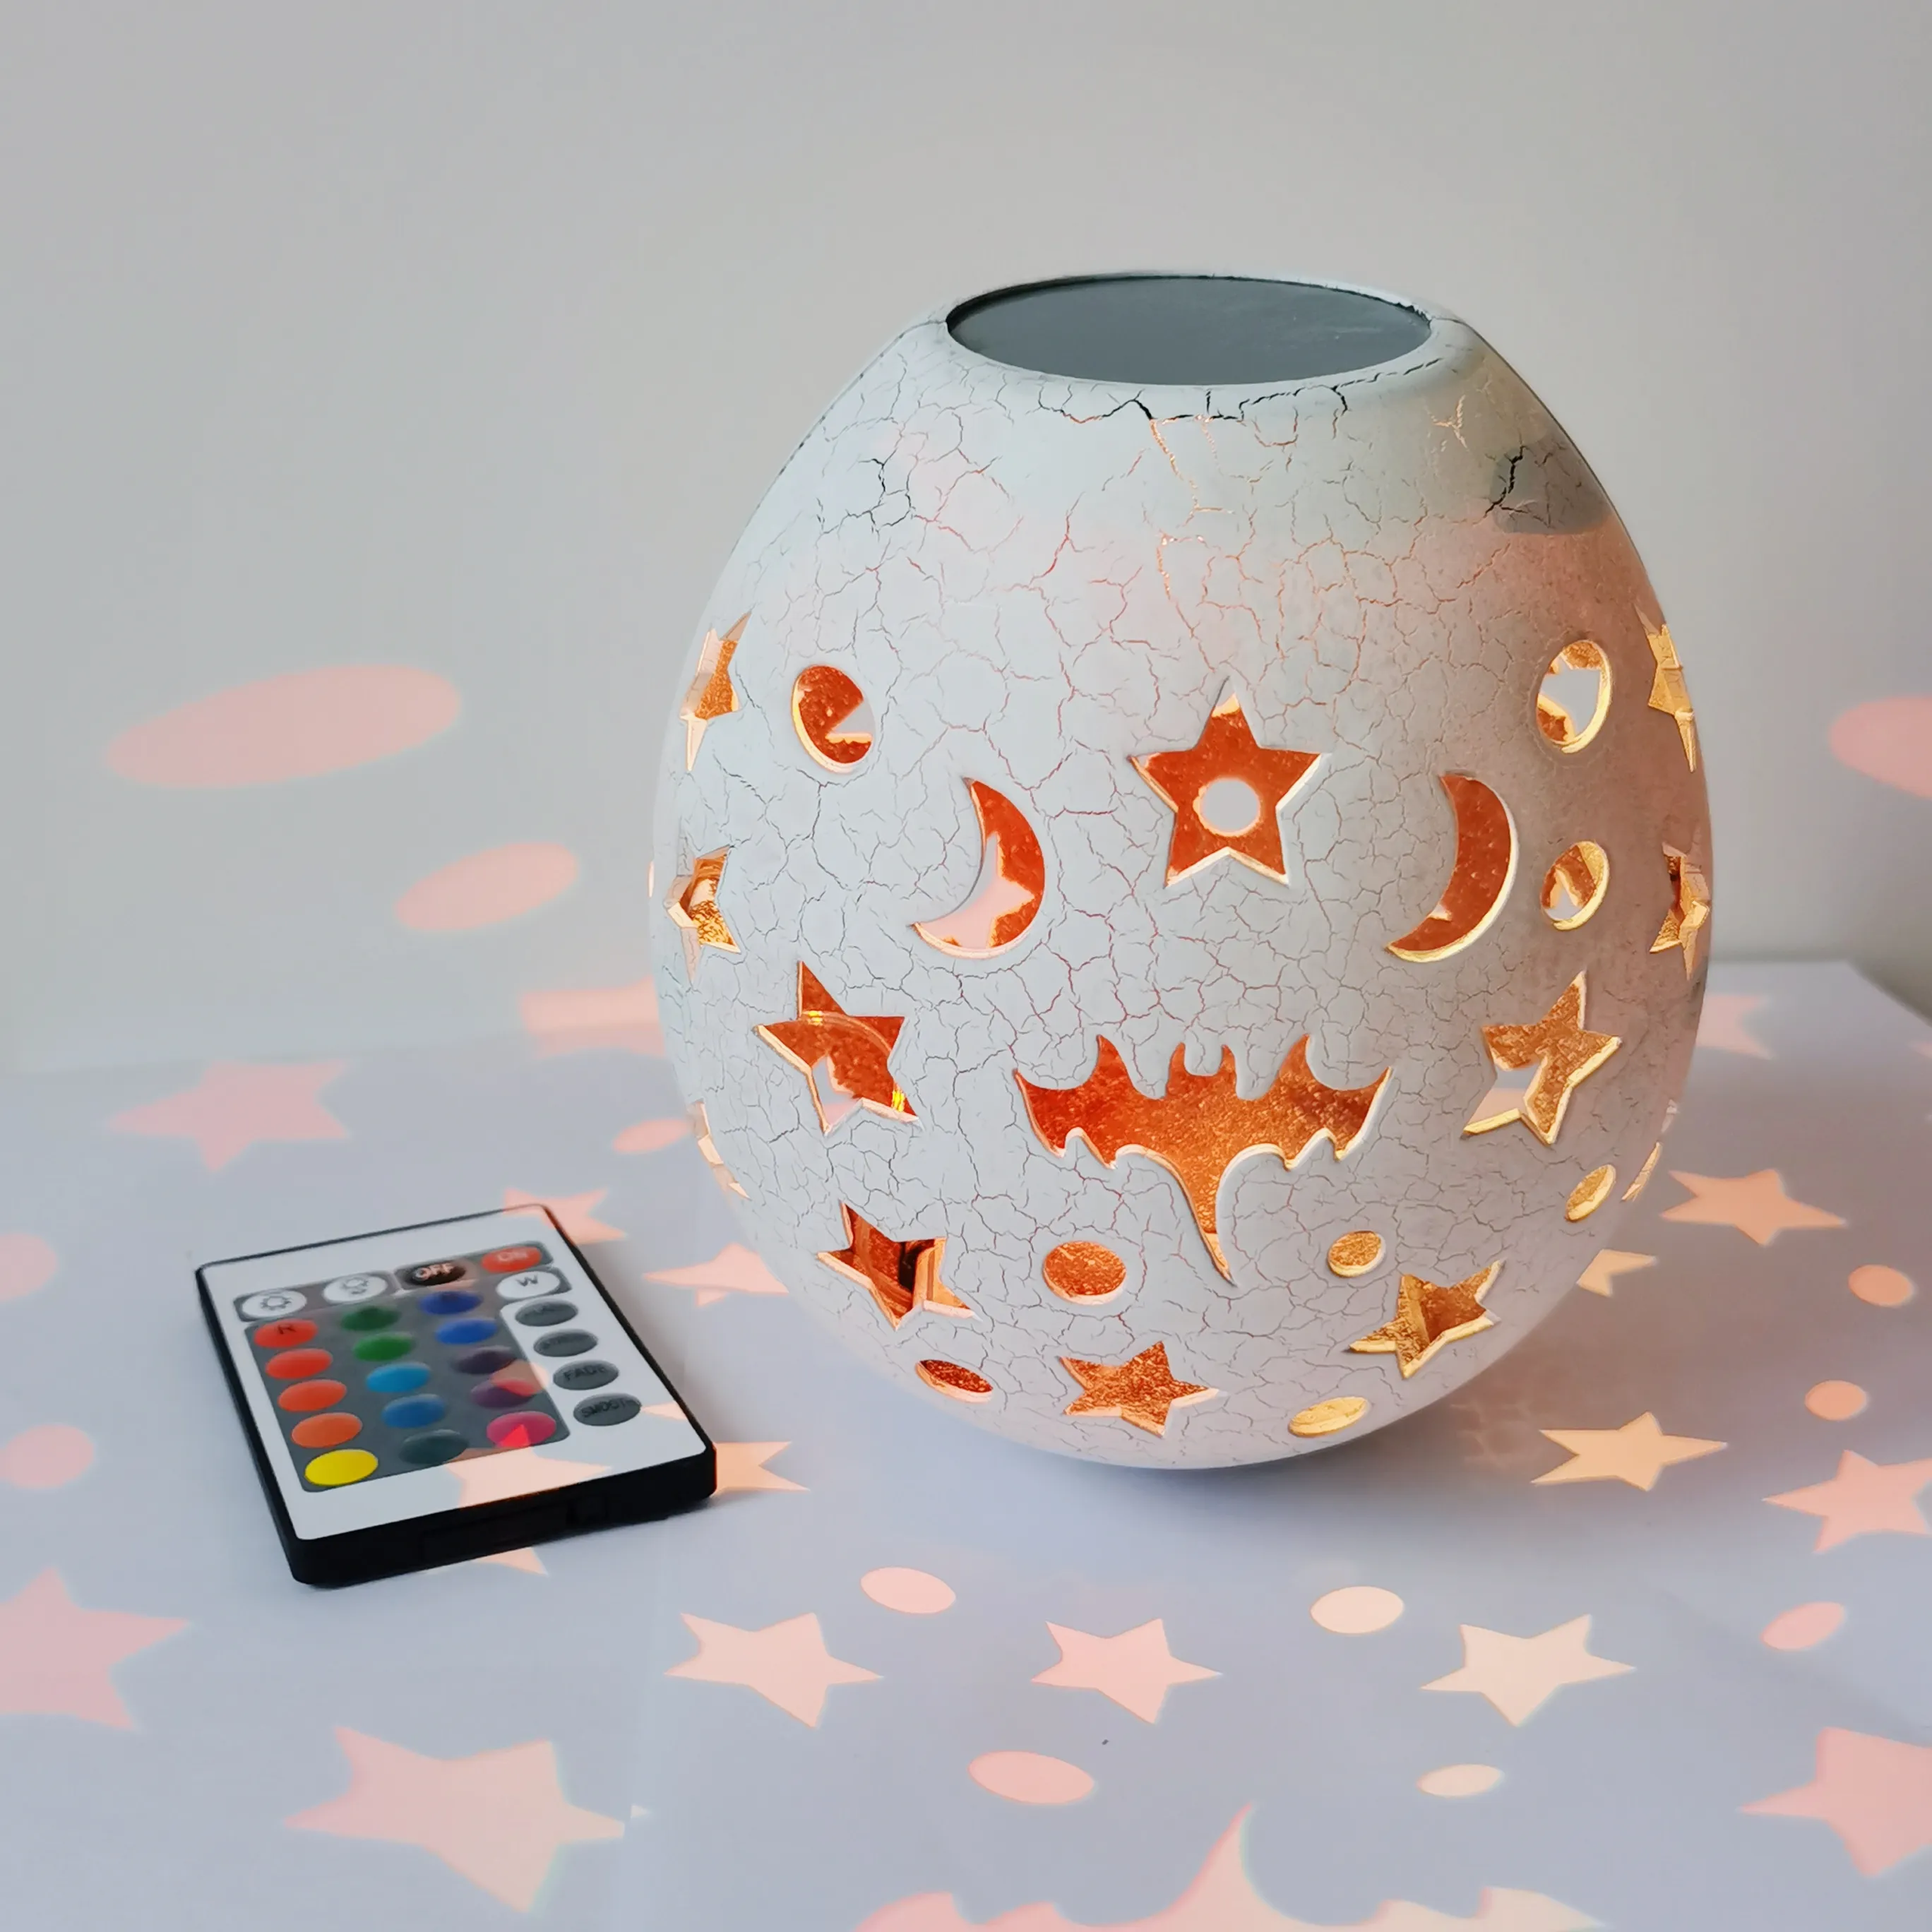 핫 세일 침실 달걀 모양 배터리 작동 USB 충전식 별이 빛나는 프로젝터 스타 야간 램프 조명